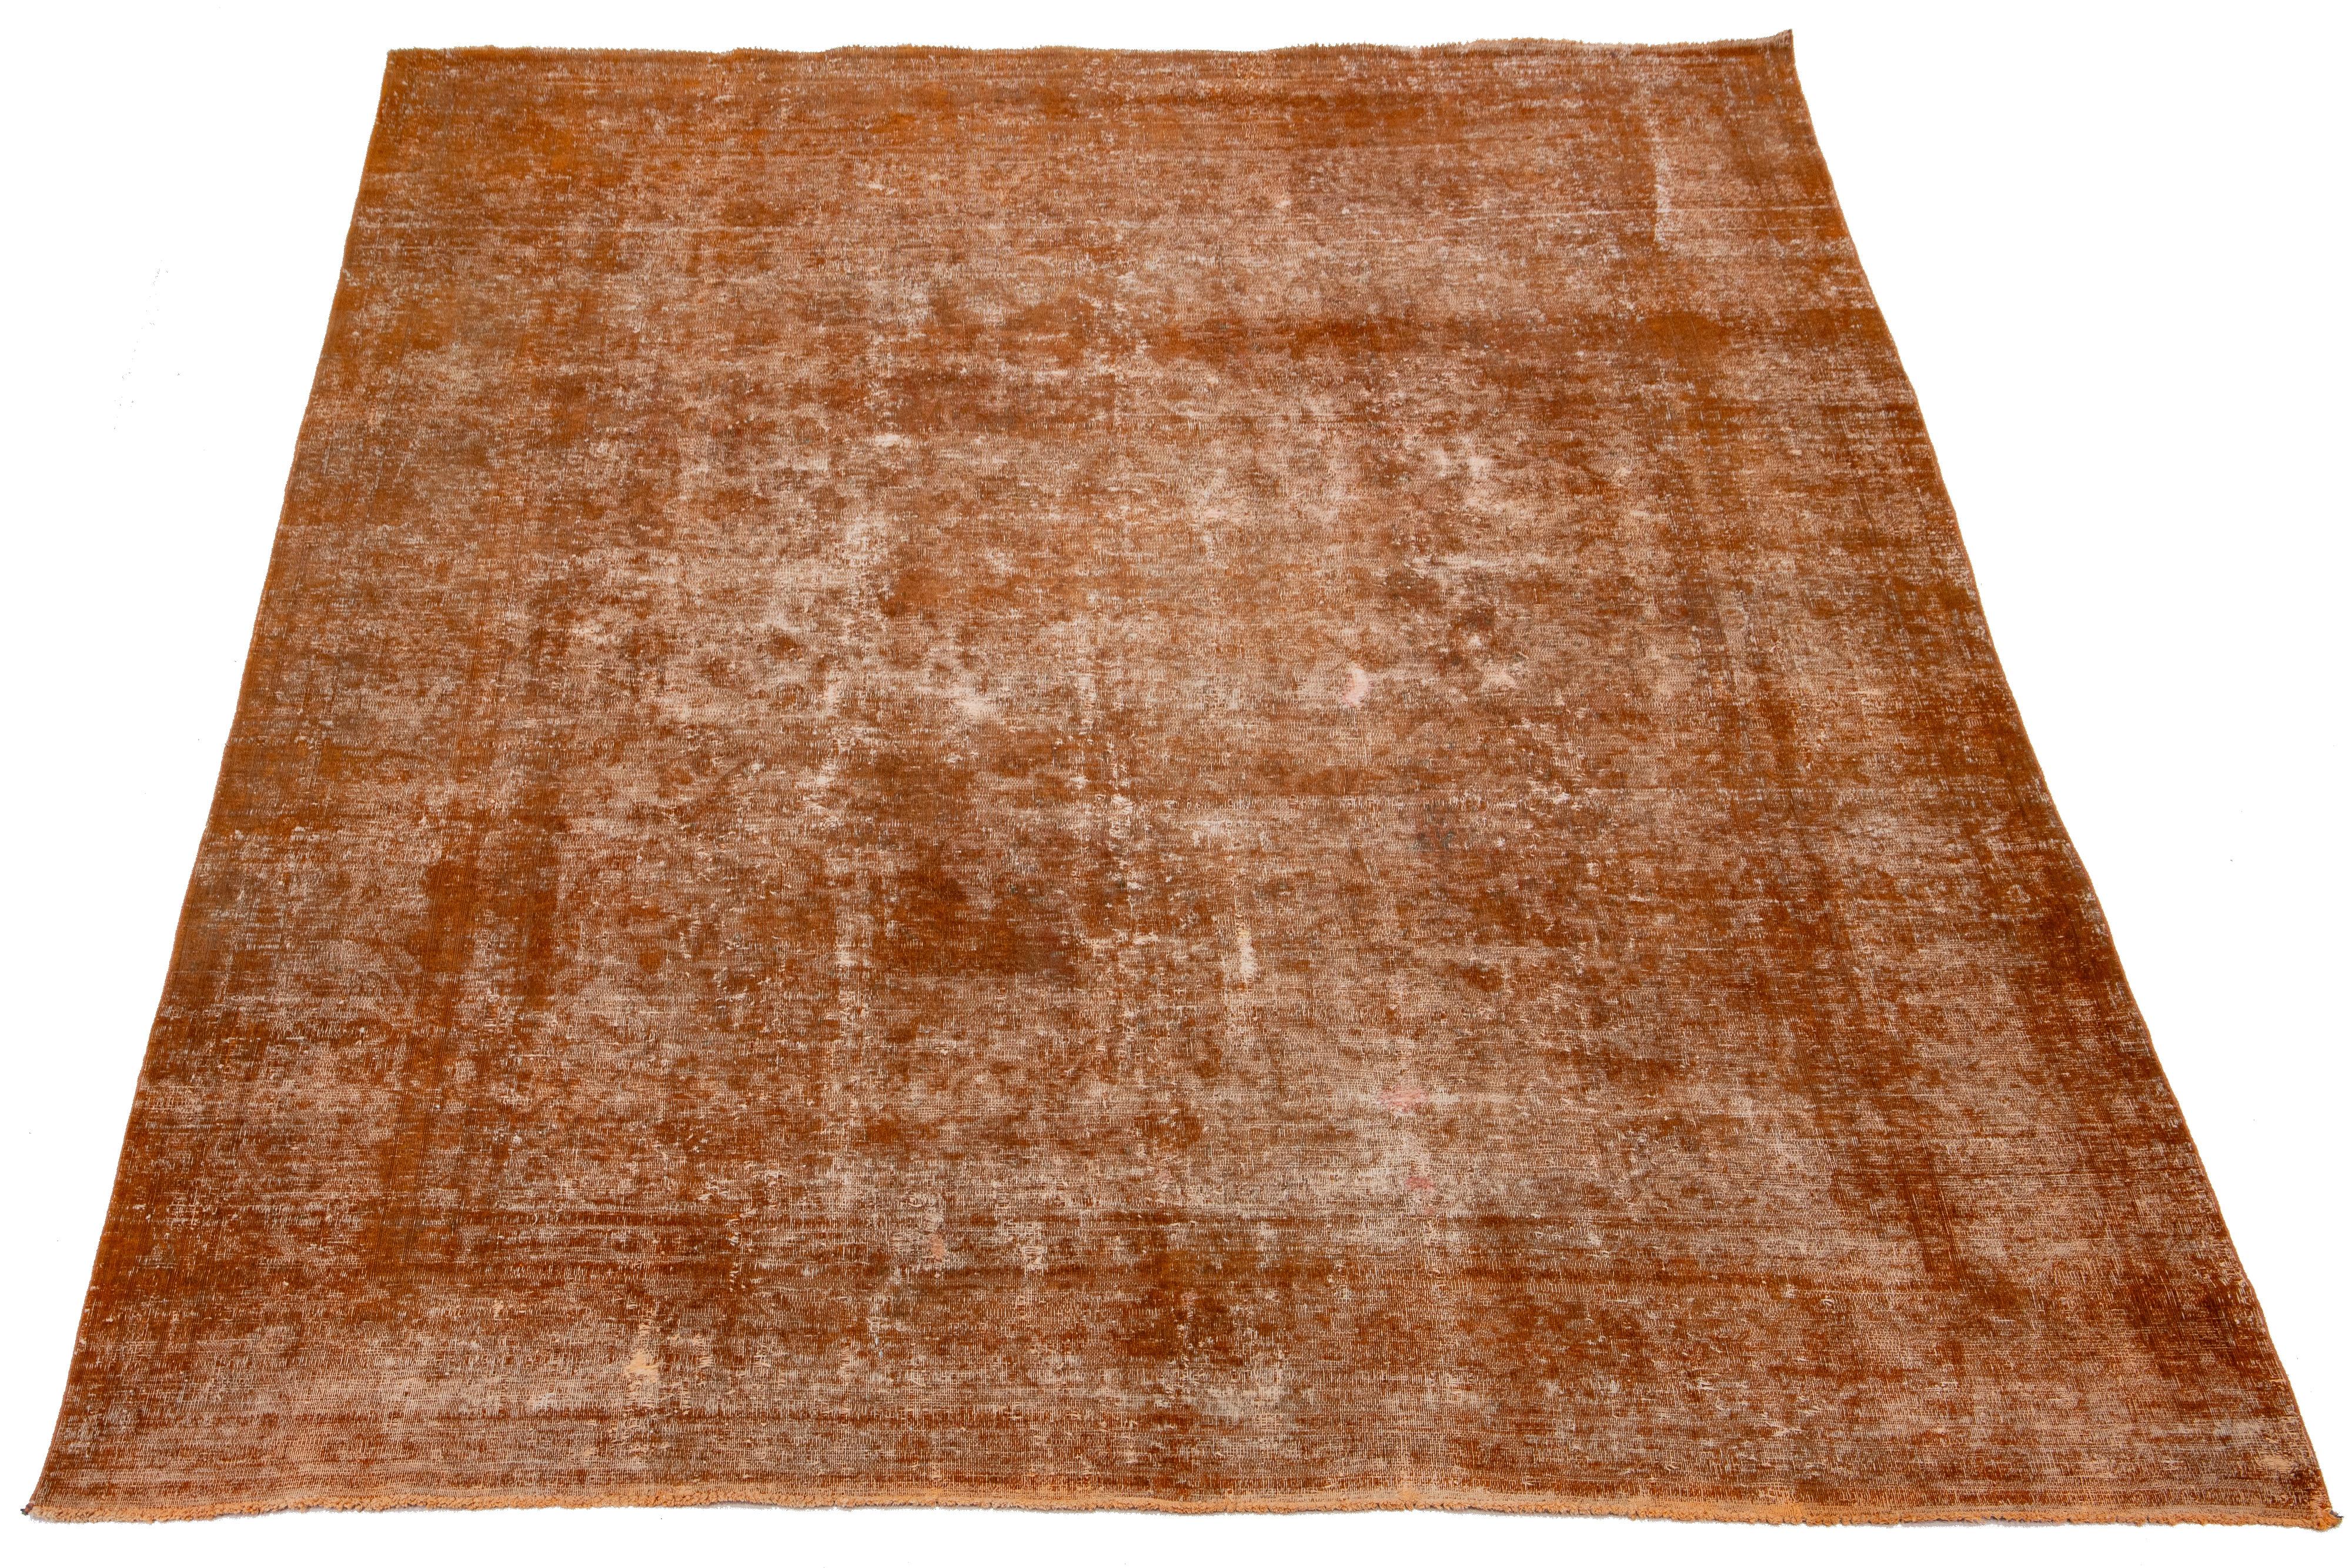 Ce tapis persan en laine orange antique présente un design allover avec des accents gris et bruns.

Ce tapis mesure 9'5'' x 12'4